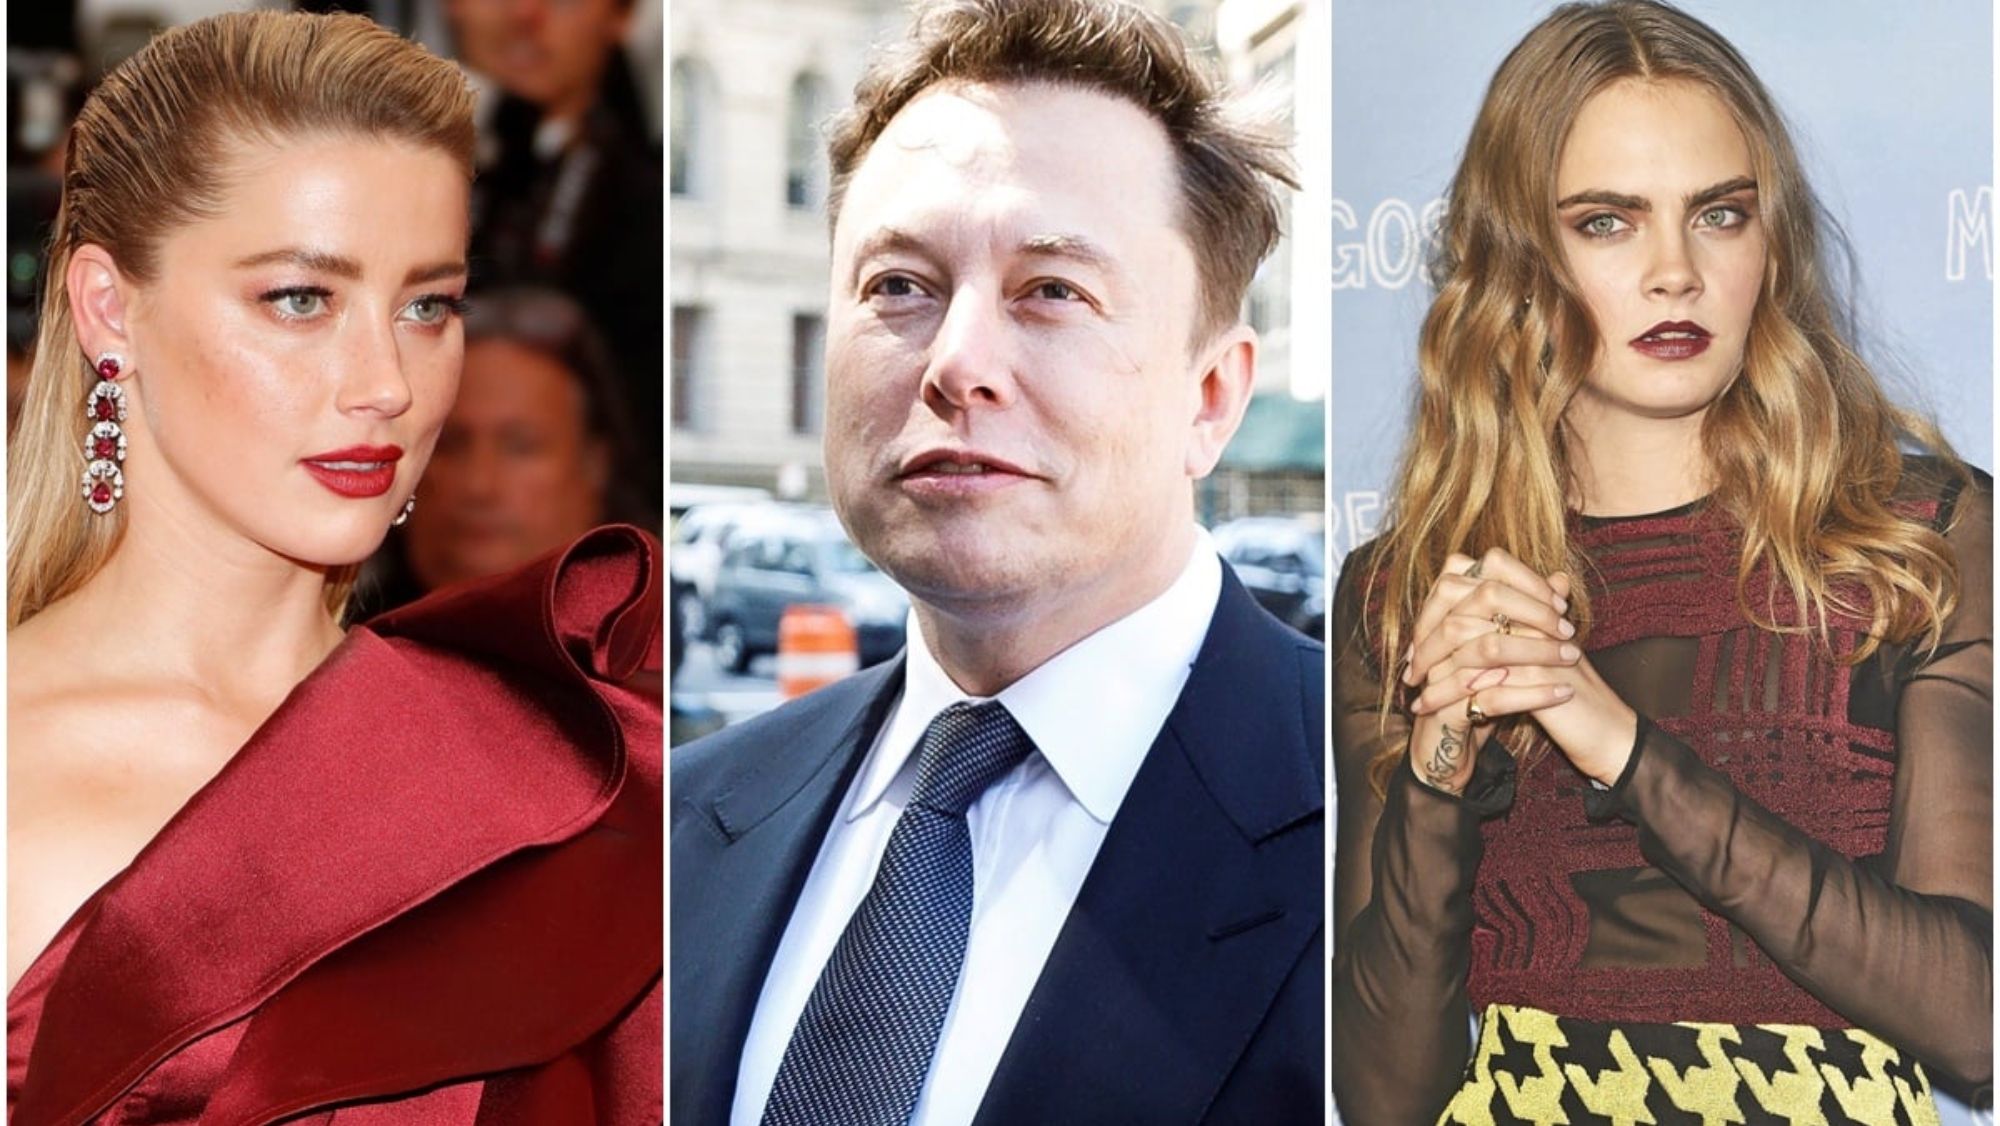 El trio Amber Heard, Elon Musk y Cara Delavingne